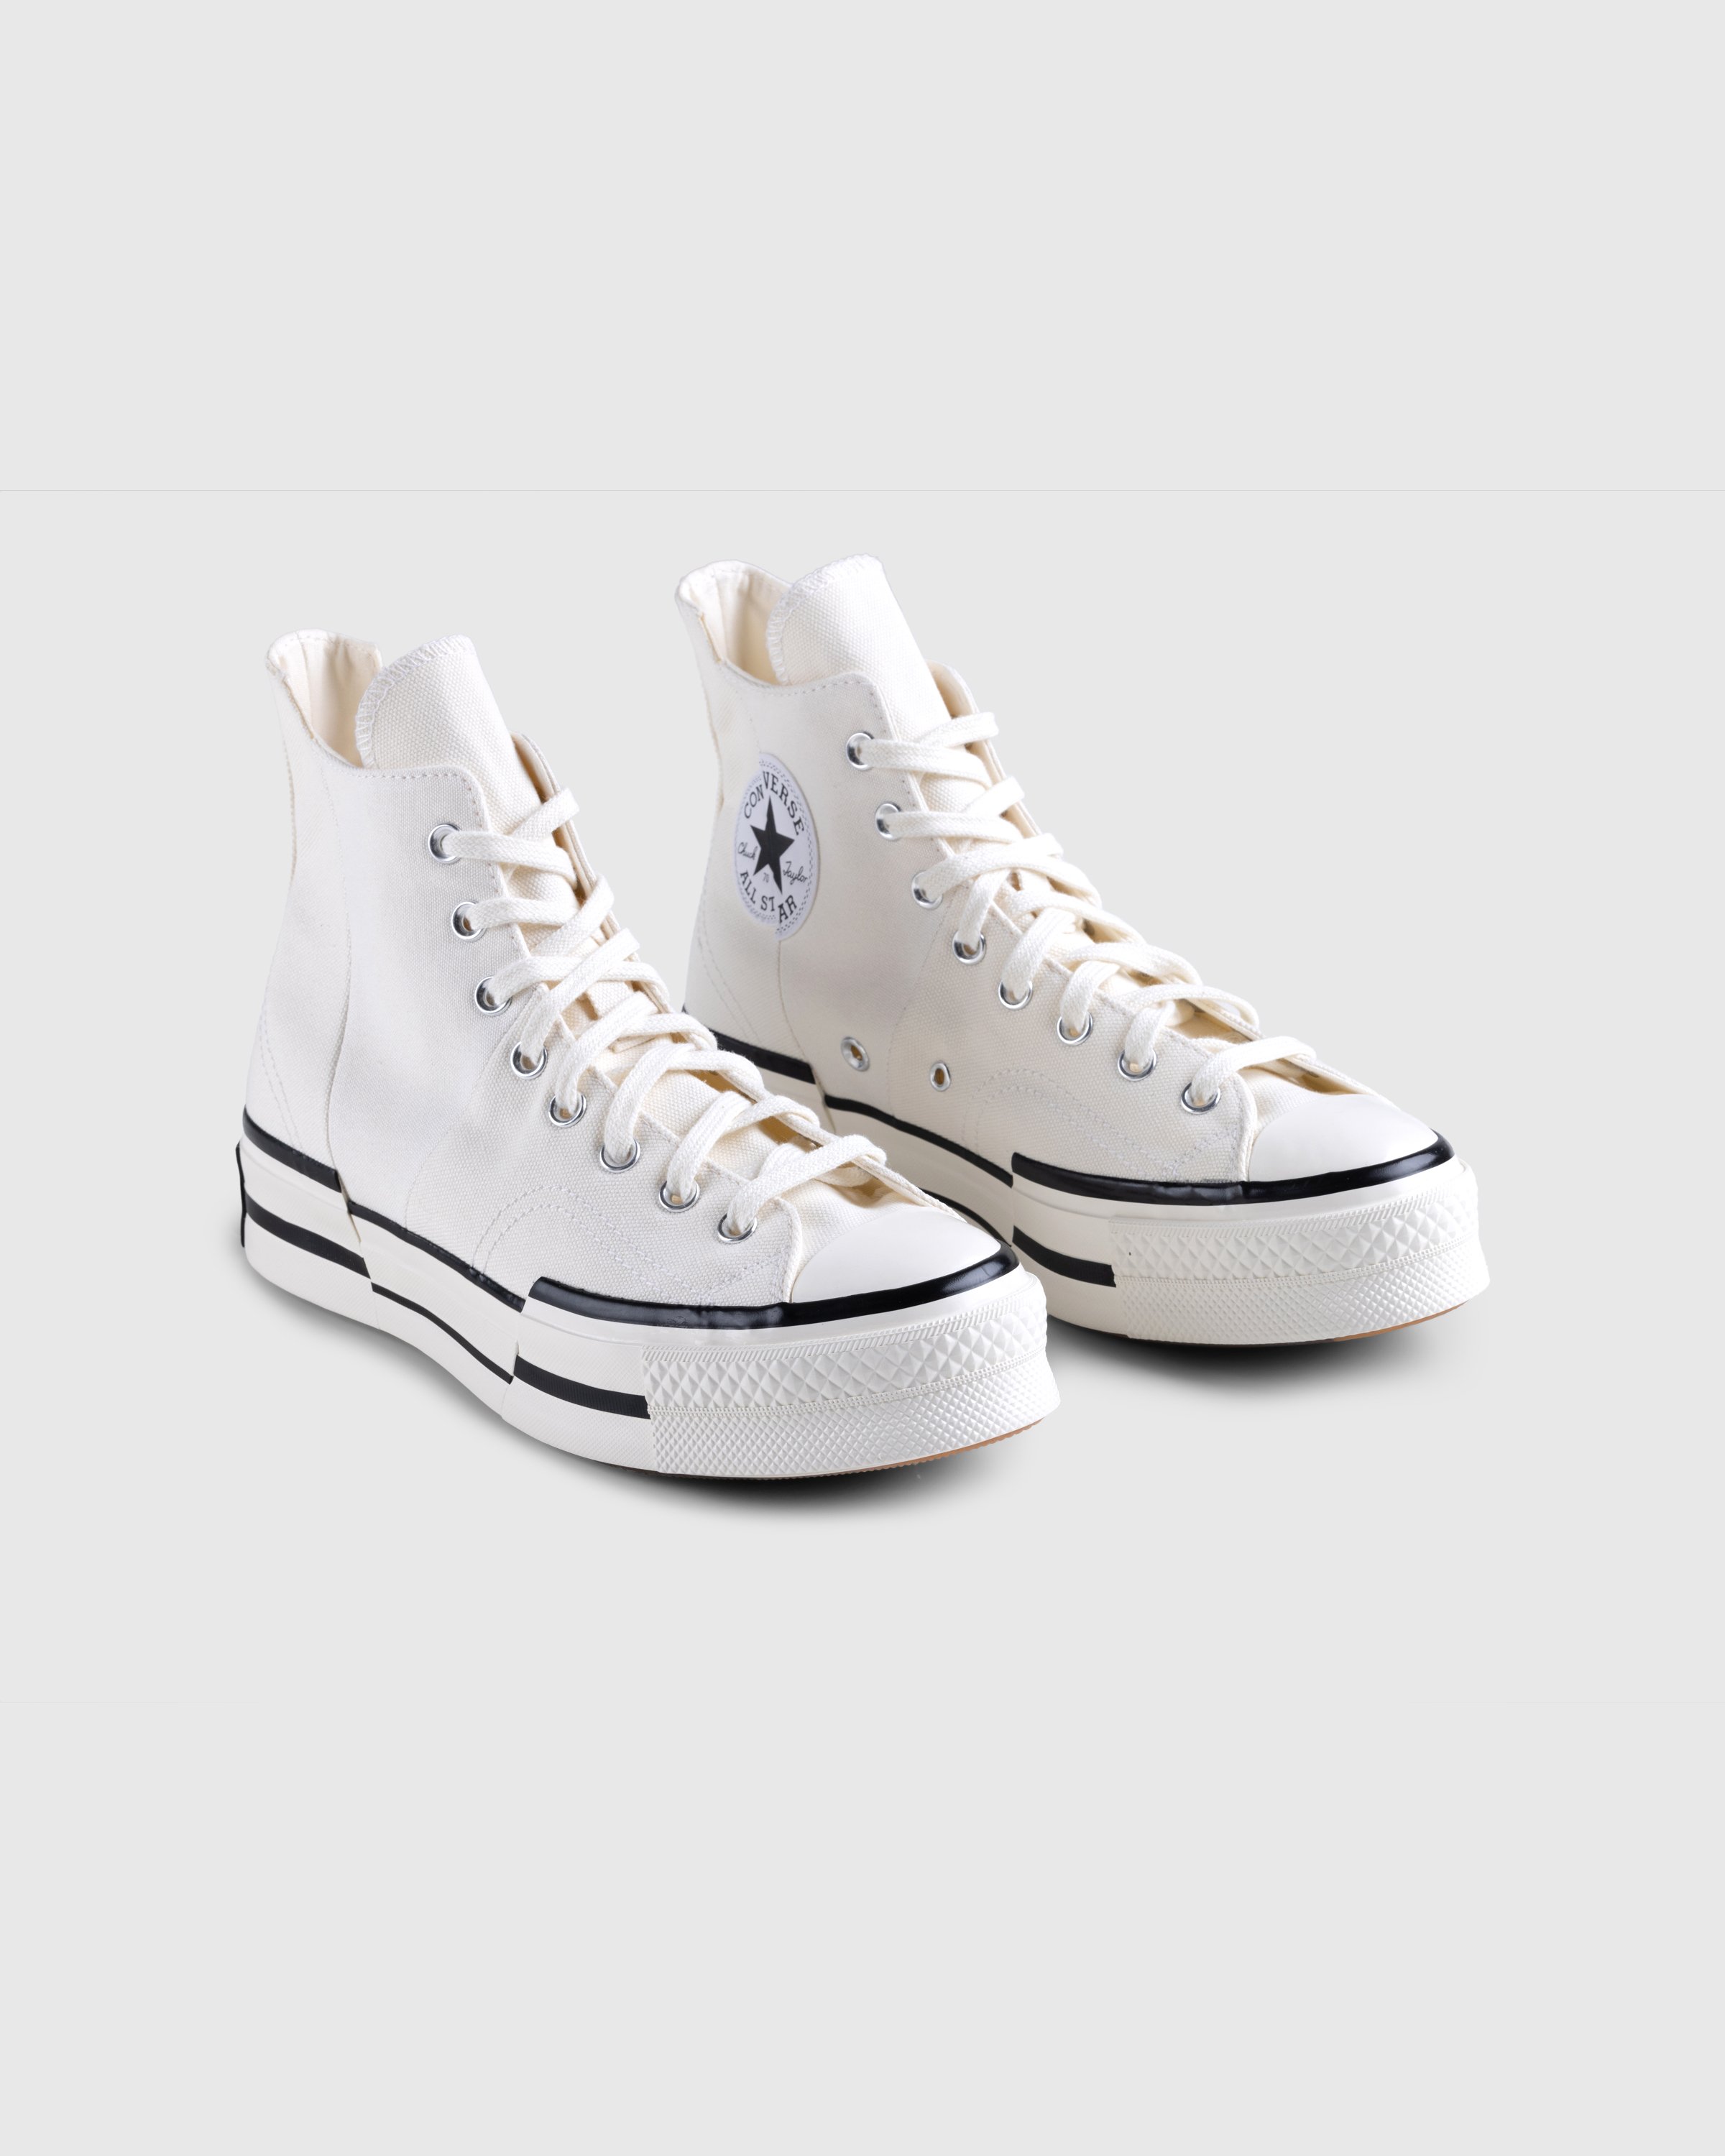 Converse - Chuck 70 Plus Canvas Egret/Black/Egret - Footwear - White - Image 3